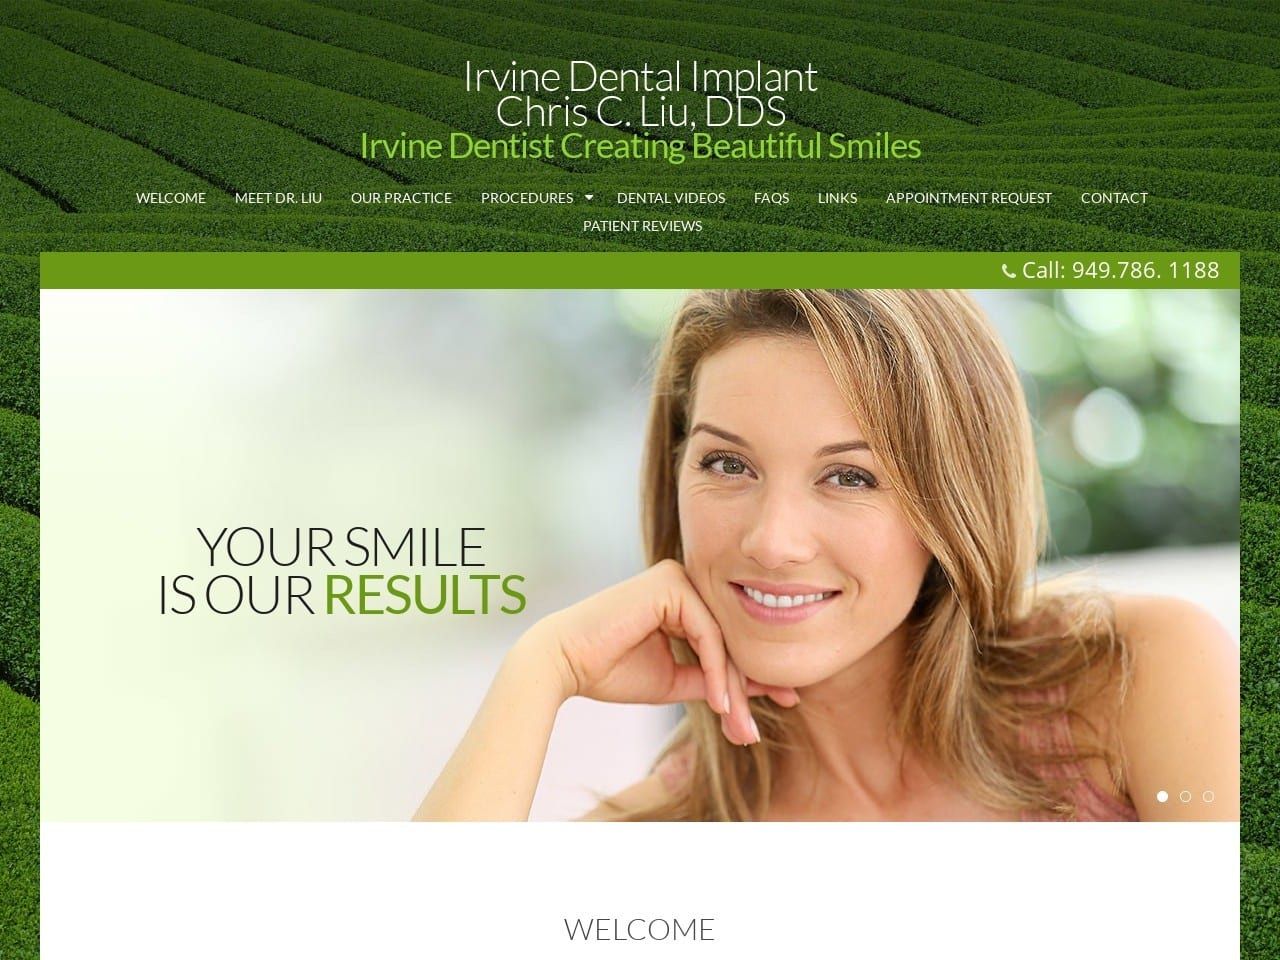 Irvine Dental Implant Website Screenshot from irvinedentalimplant.com